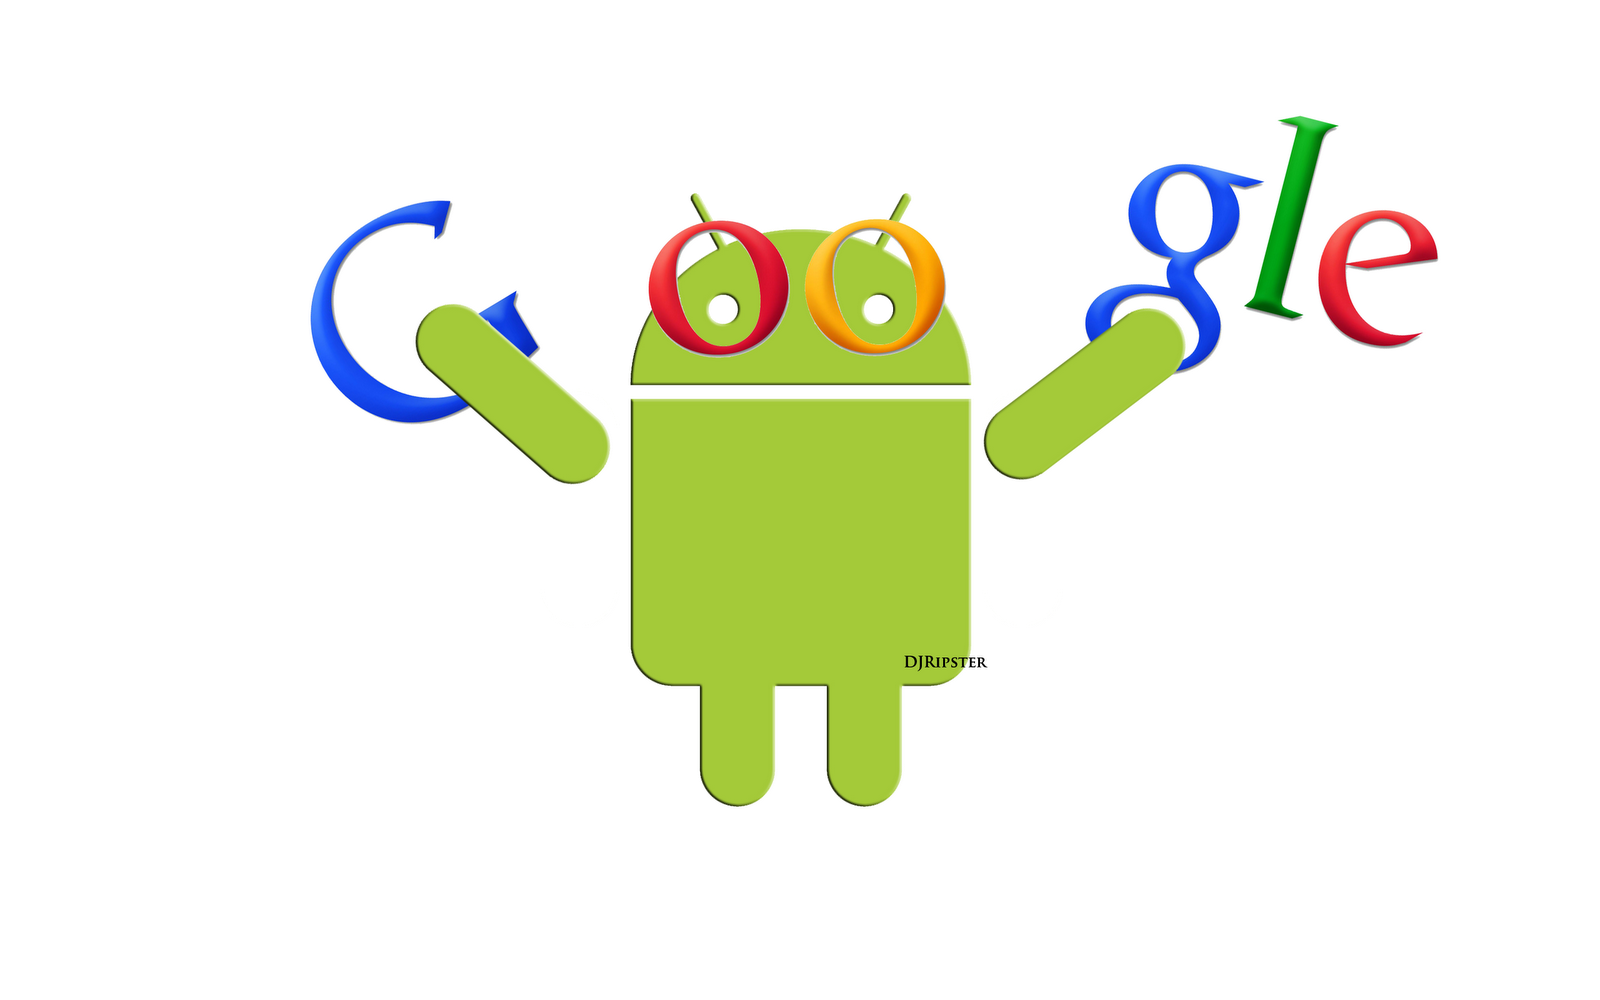 Google Android Akıllı Telefon Öneri Sistemi - 1600 x 1000 png 212kB